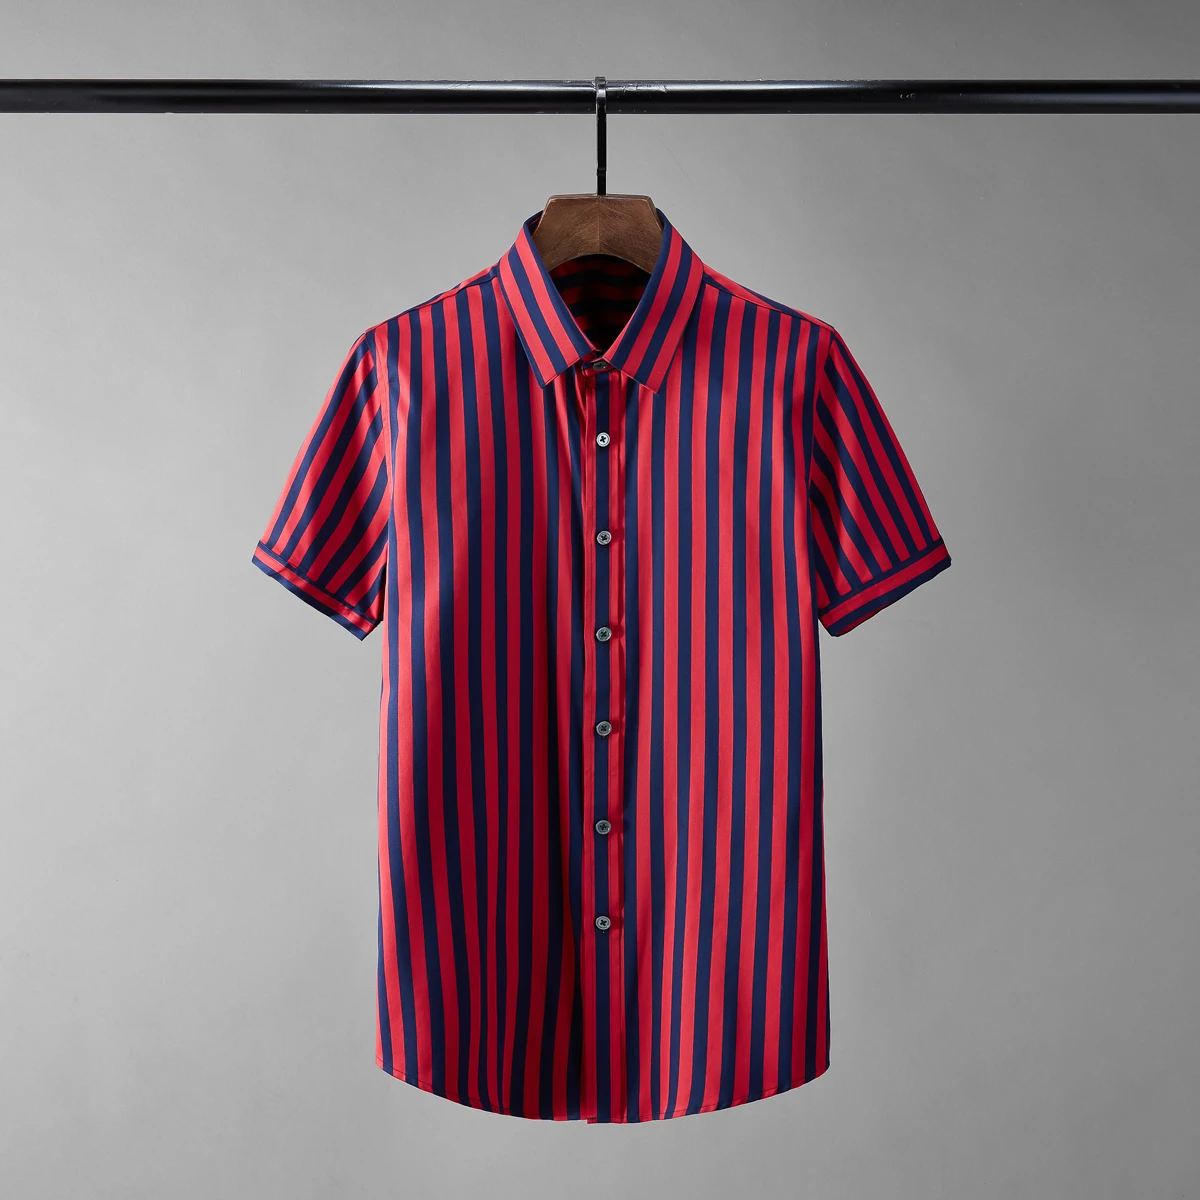 

Minglu протектор летние мужские футболки класса люкс с коротким рукавом, крашенная в пряже, полосатая блуза, мужские нарядные рубашки мода Slim ...